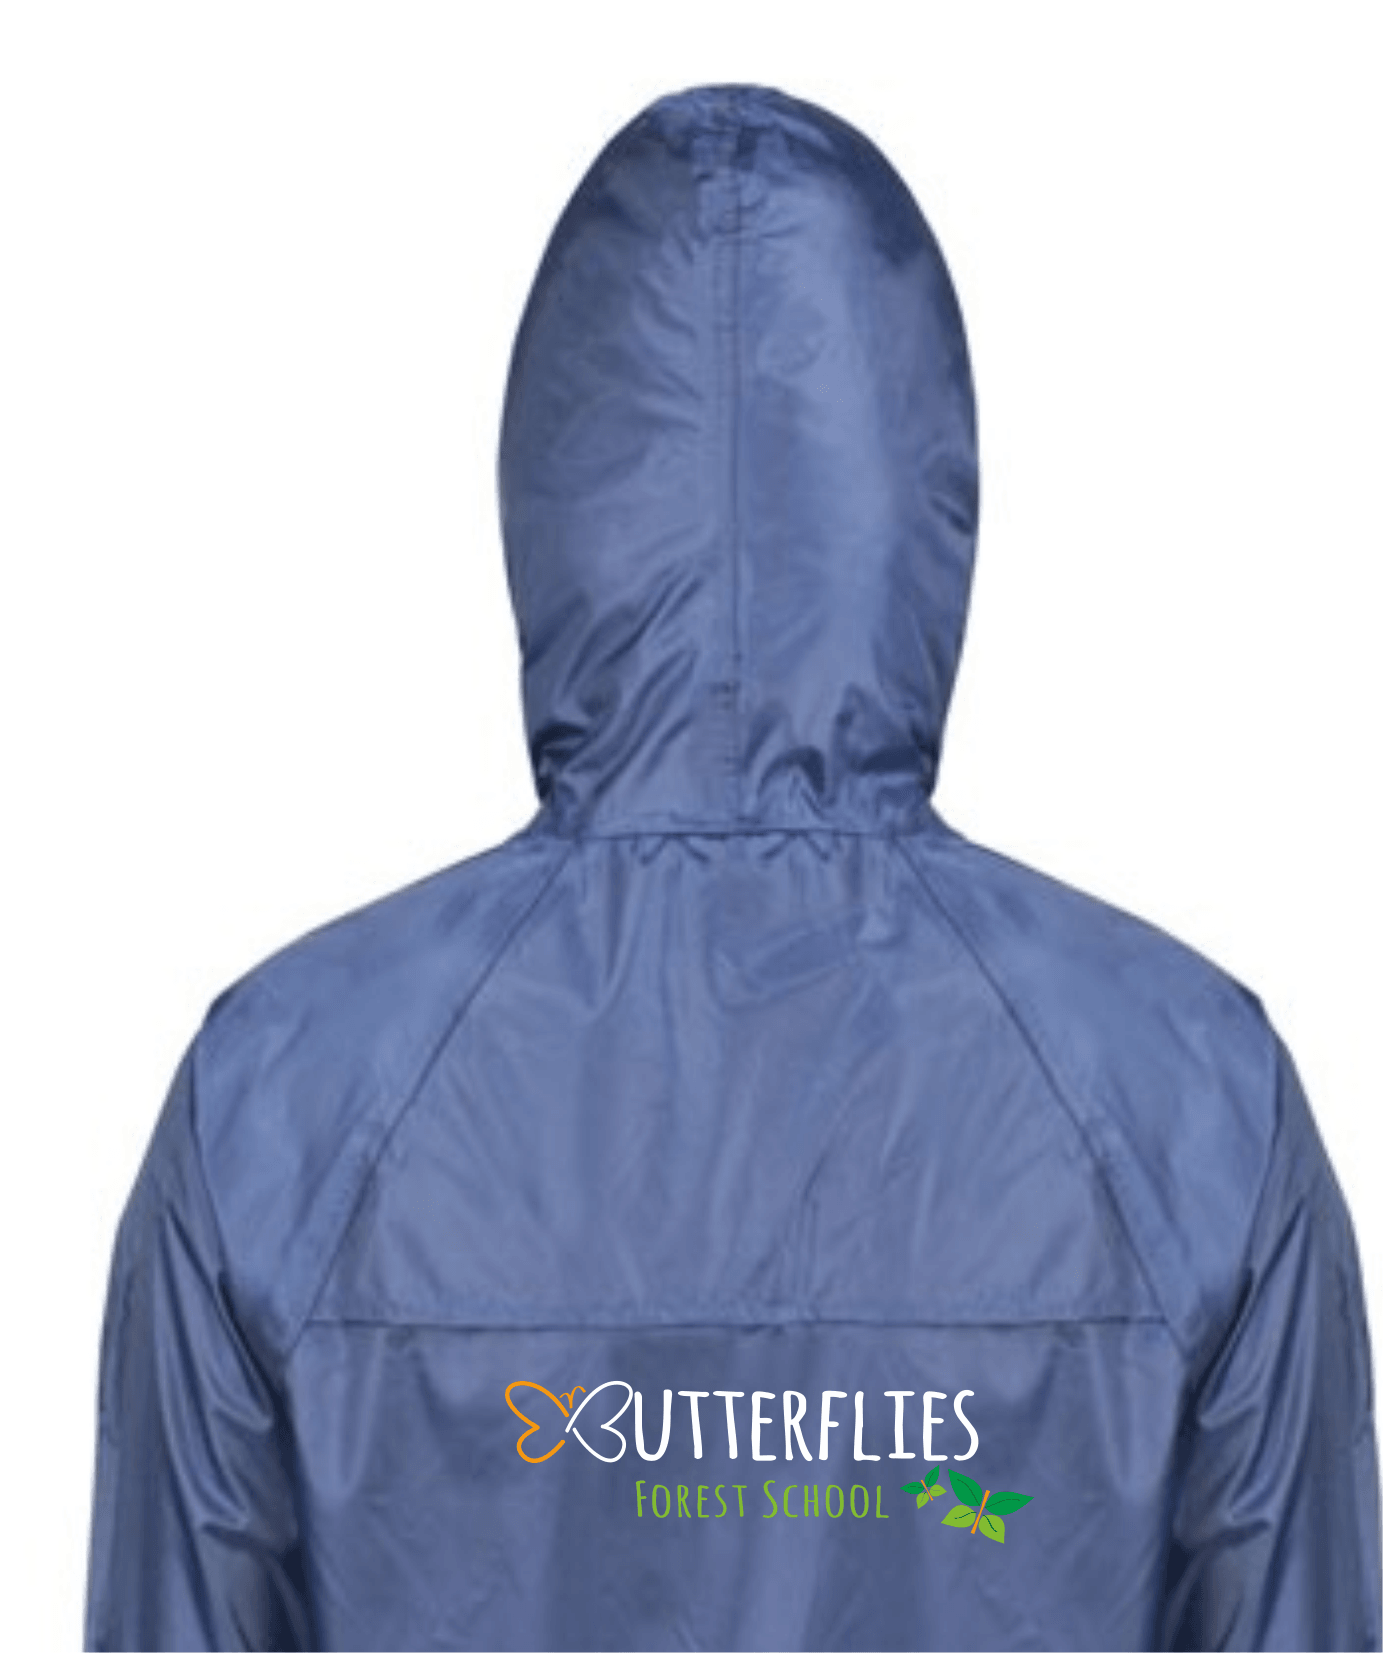 Butterflies- Waterproof Jacket (Kids)